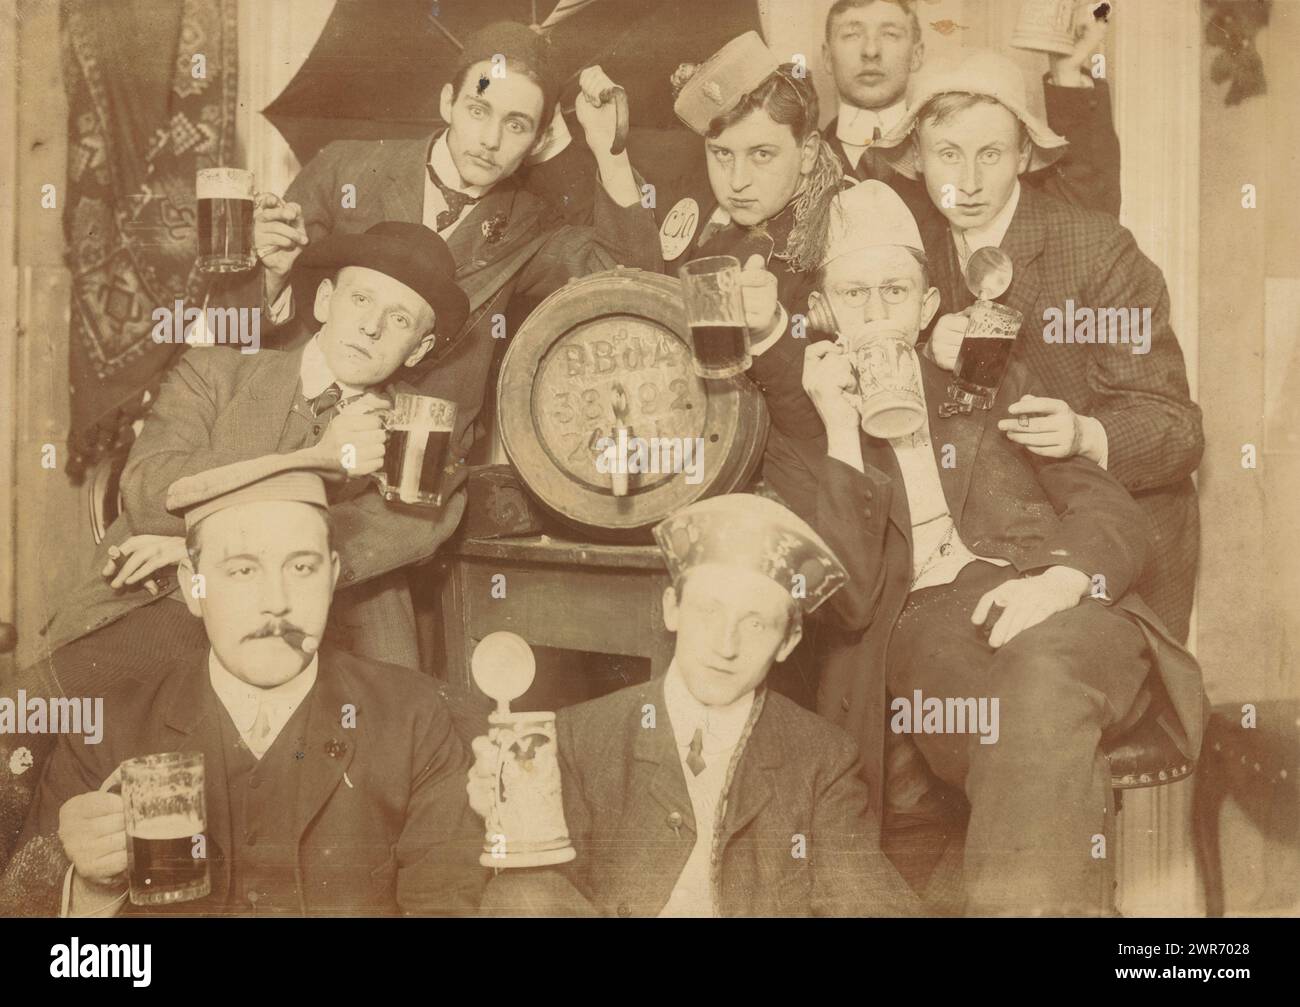 Gruppenporträt von acht unbekannten jungen Männern, die feiern und toasten, im Hotel Scheltema in Amsterdam, anonym, Amsterdam, ca. 1895 - ca. 1900, baryta-Papier, Höhe 139 mm x Breite 189 mm, Foto Stockfoto